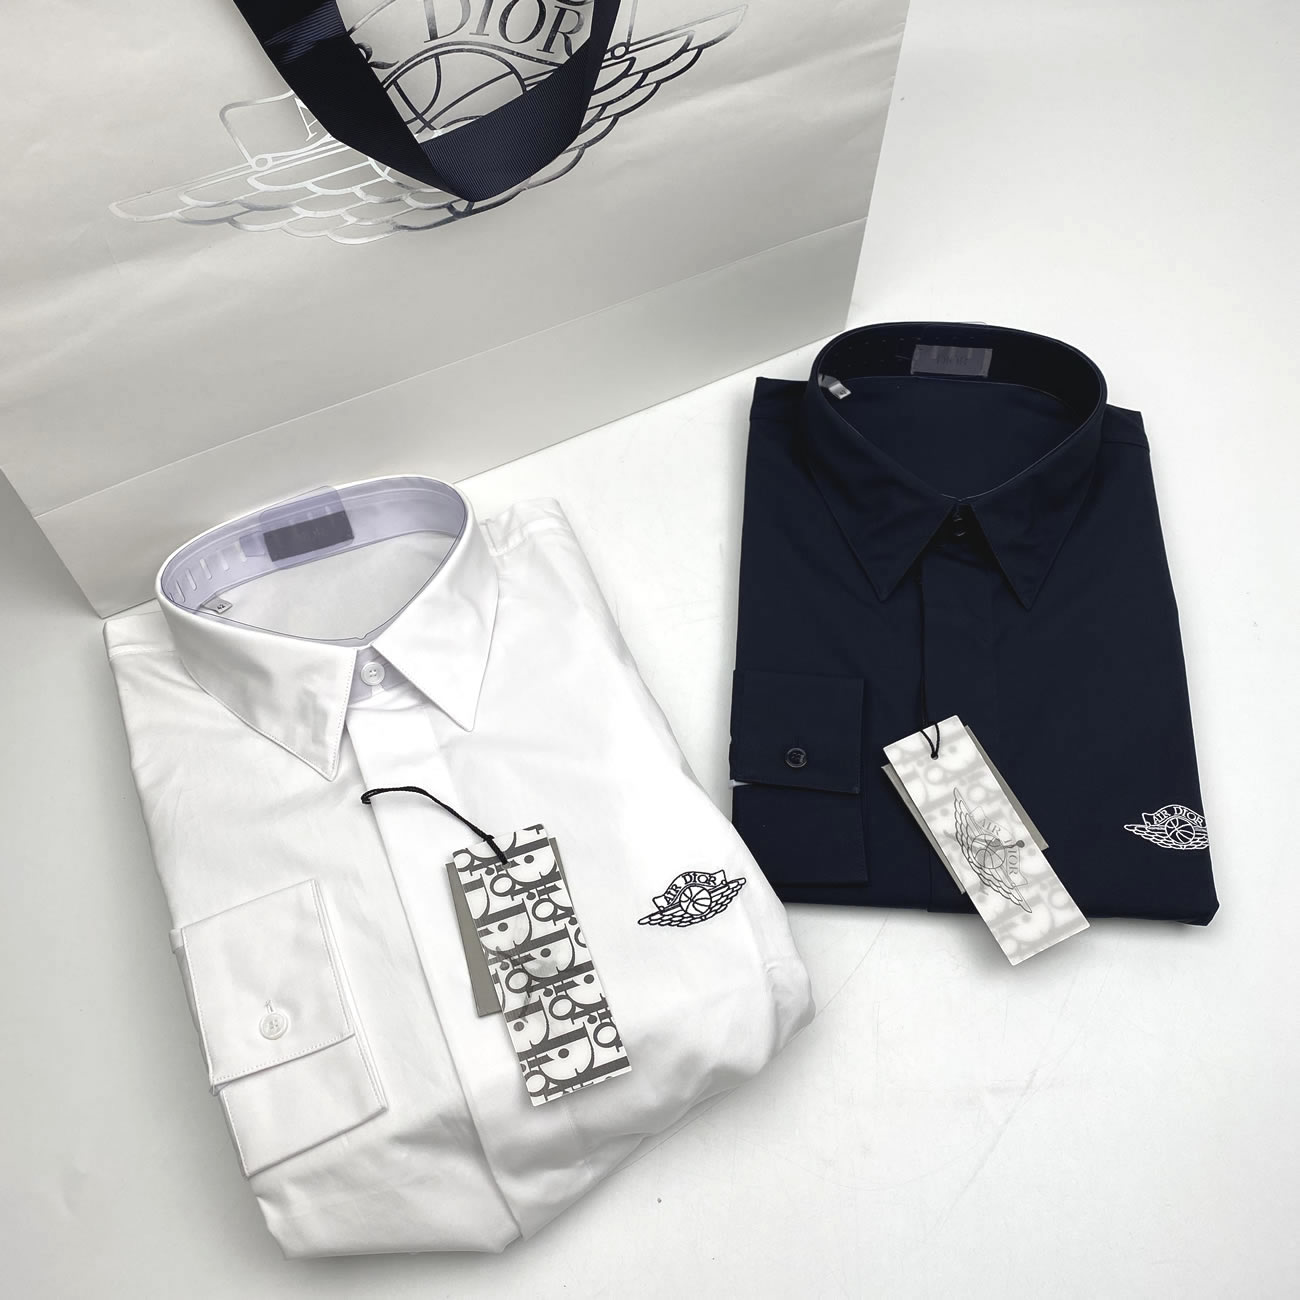 Dior Air Jordan T Shirt White Black S 2xl (1) - newkick.org